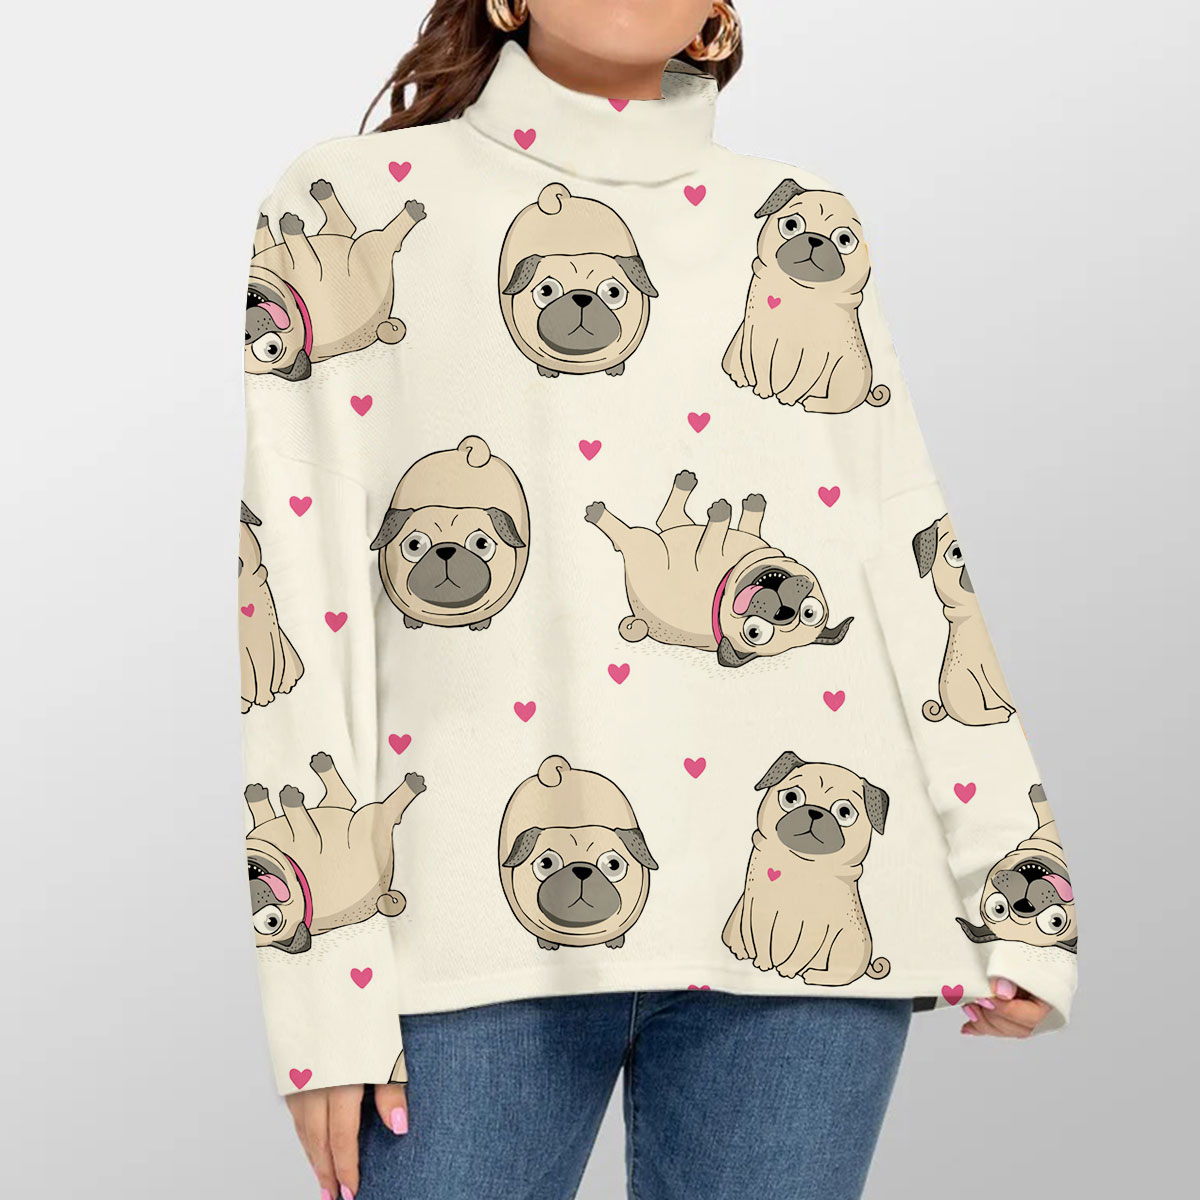 Cute Dog Turtleneck Sweater_1_2.1